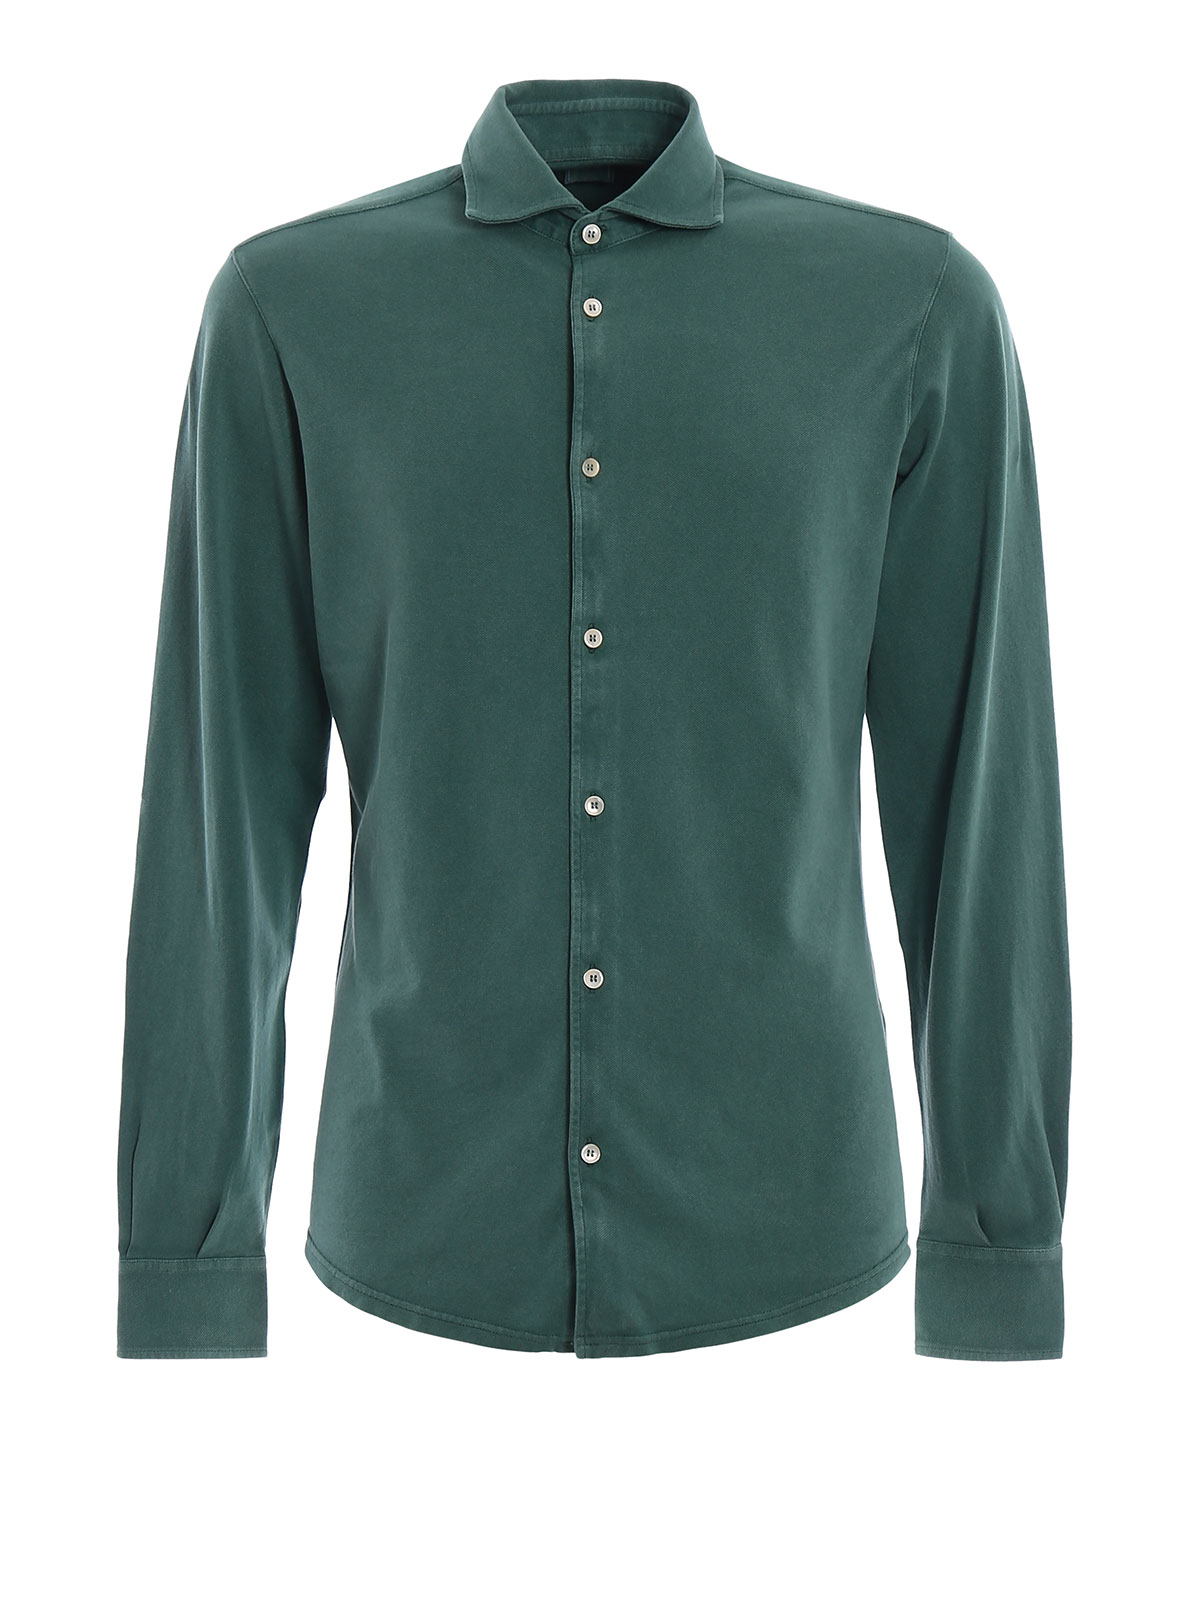 Polo shirts Fedeli - Long sleeves green polo shirt - FE1UE00101827P18